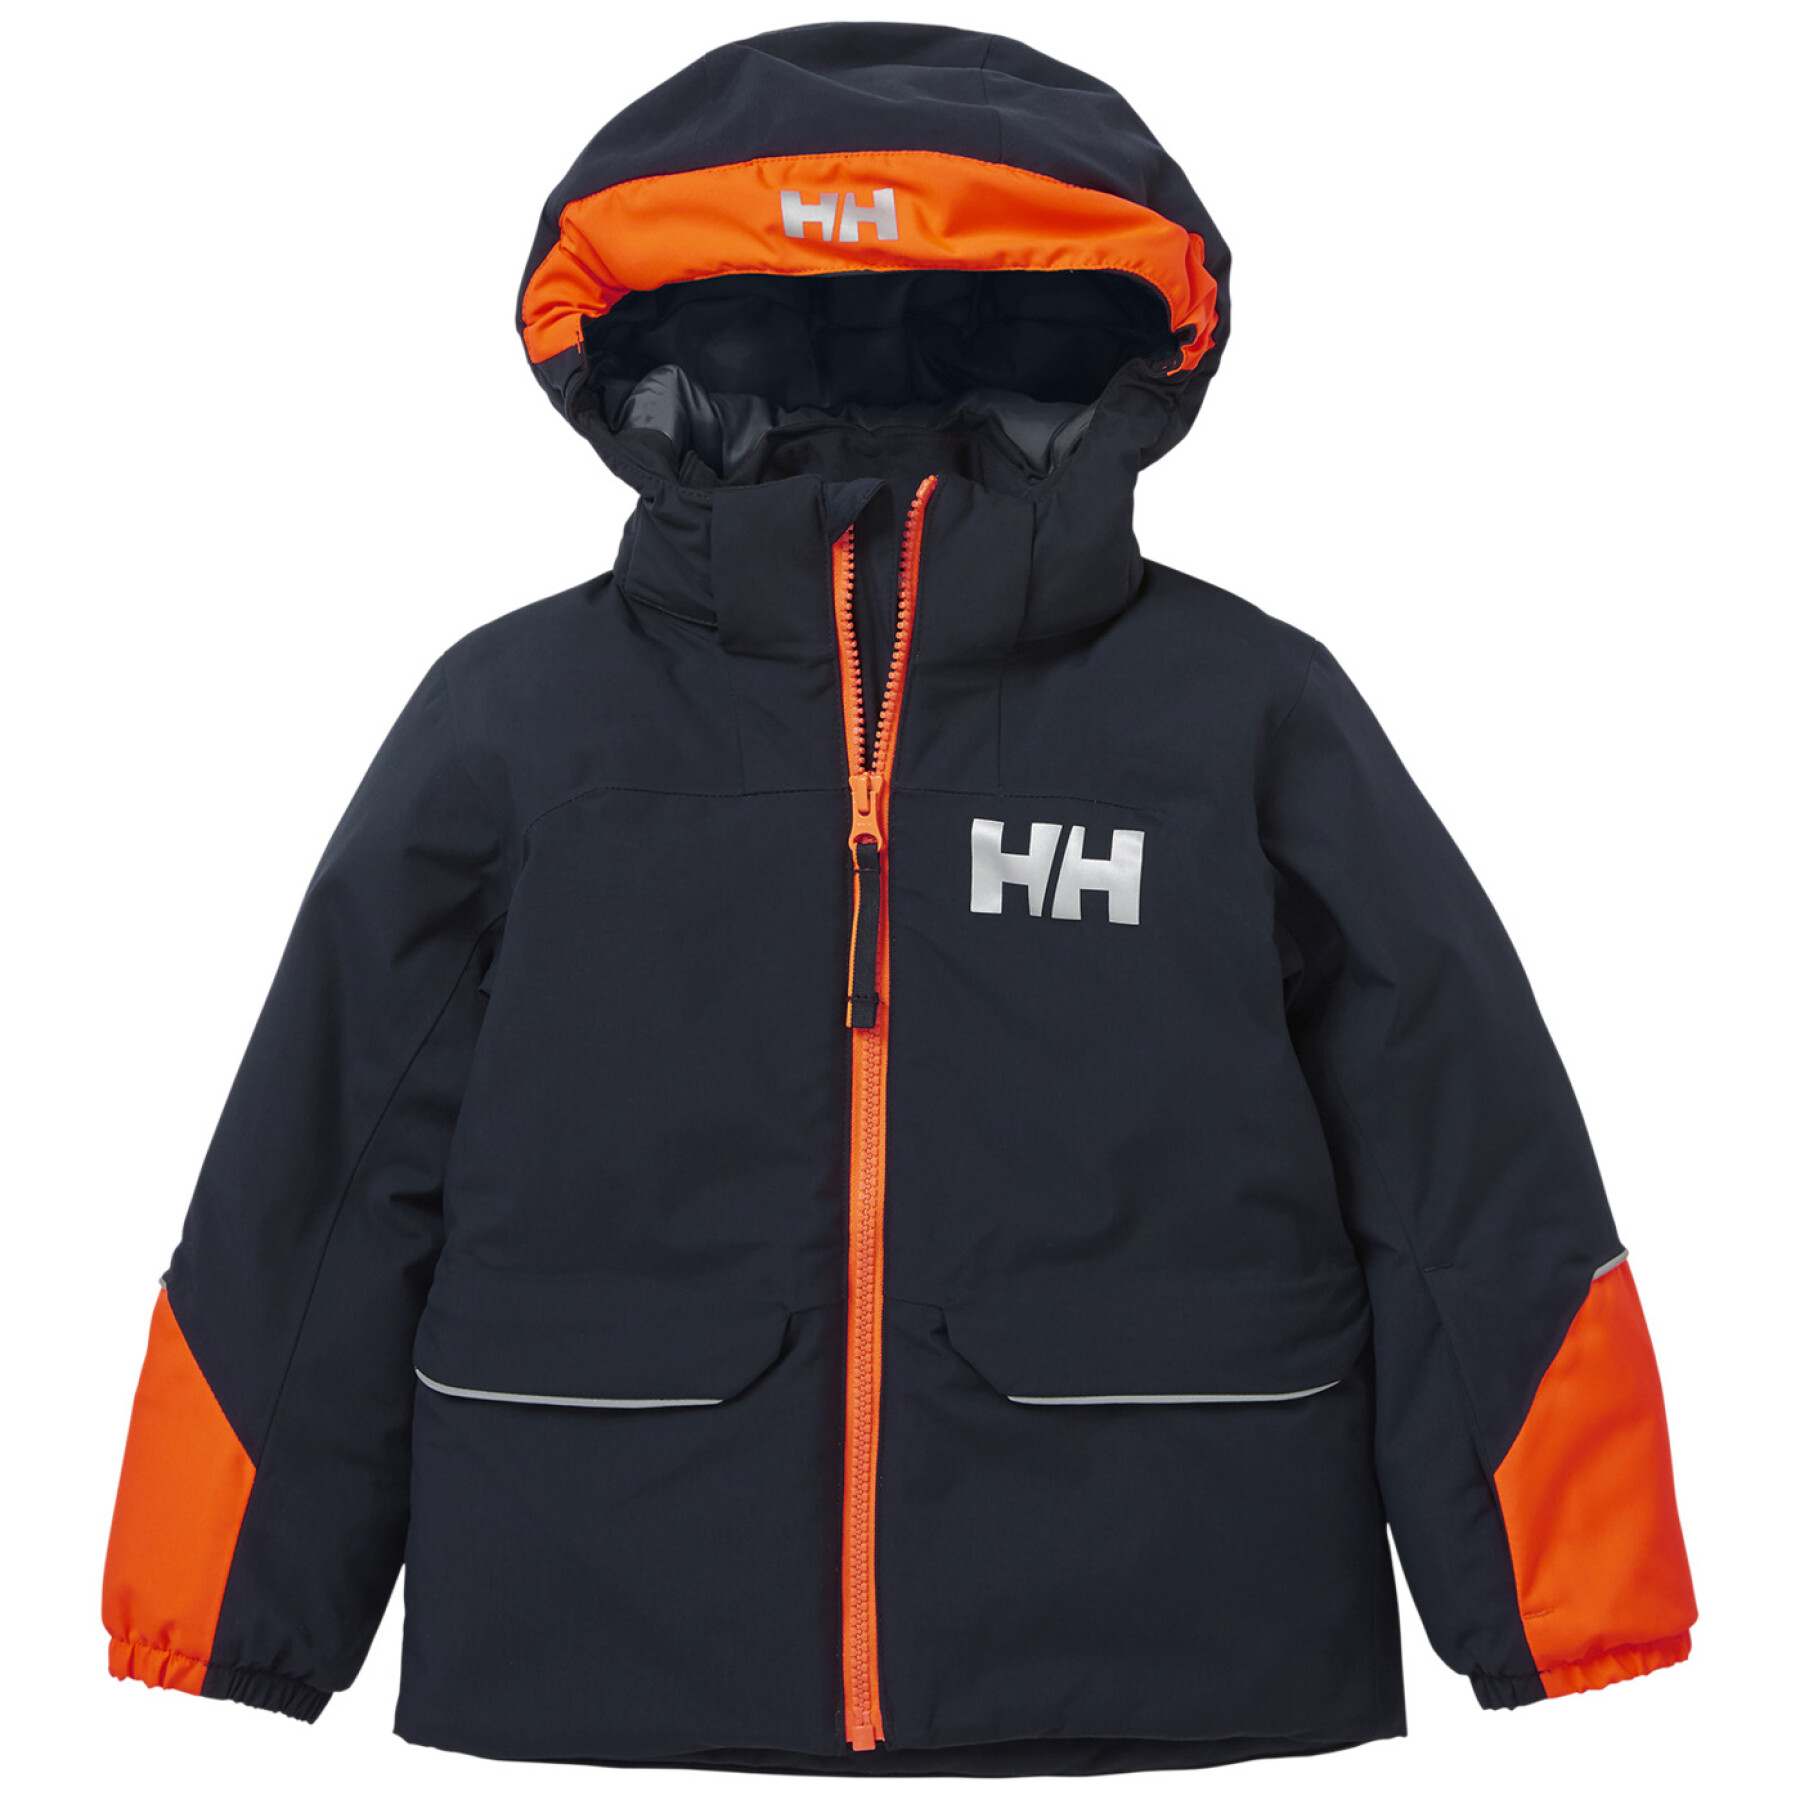 Waterproof jacket for children Helly Hansen Tinden ins